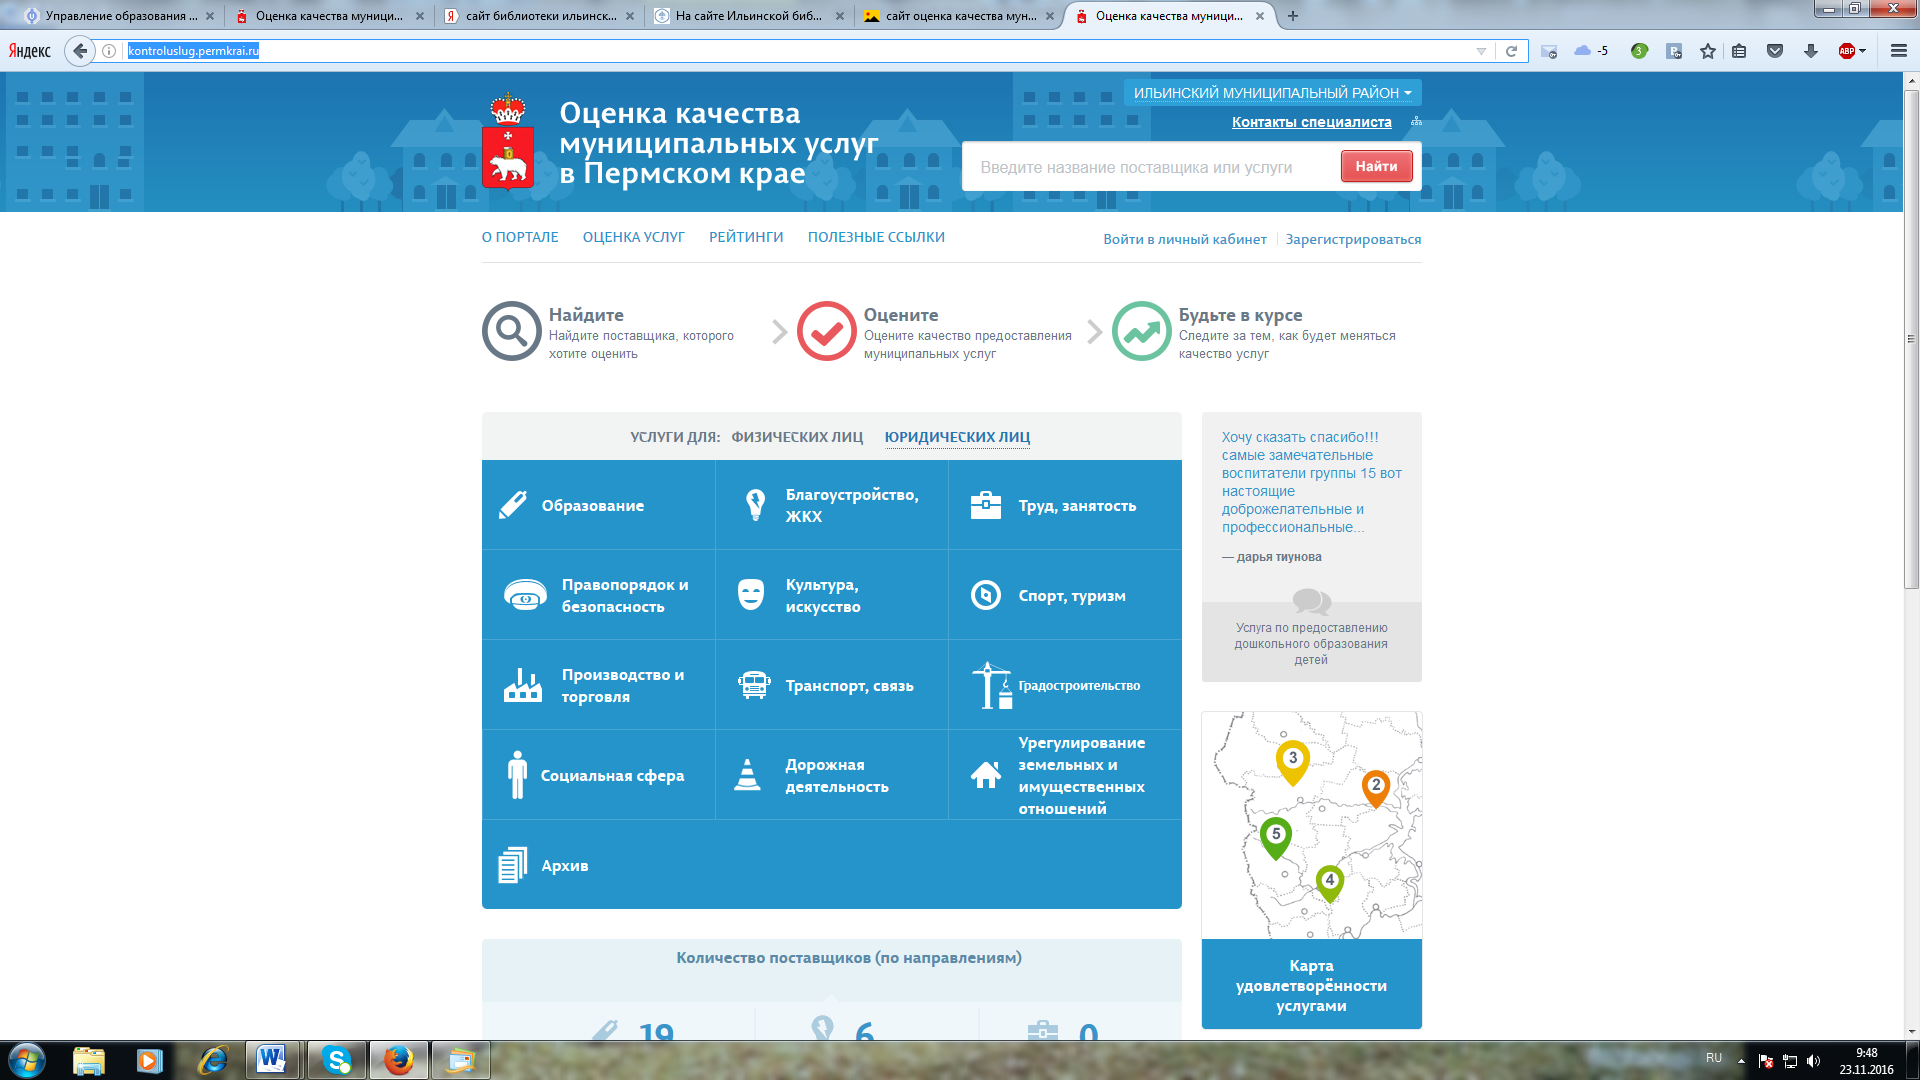 Оценка качества муниципальных услуг в Пермском крае